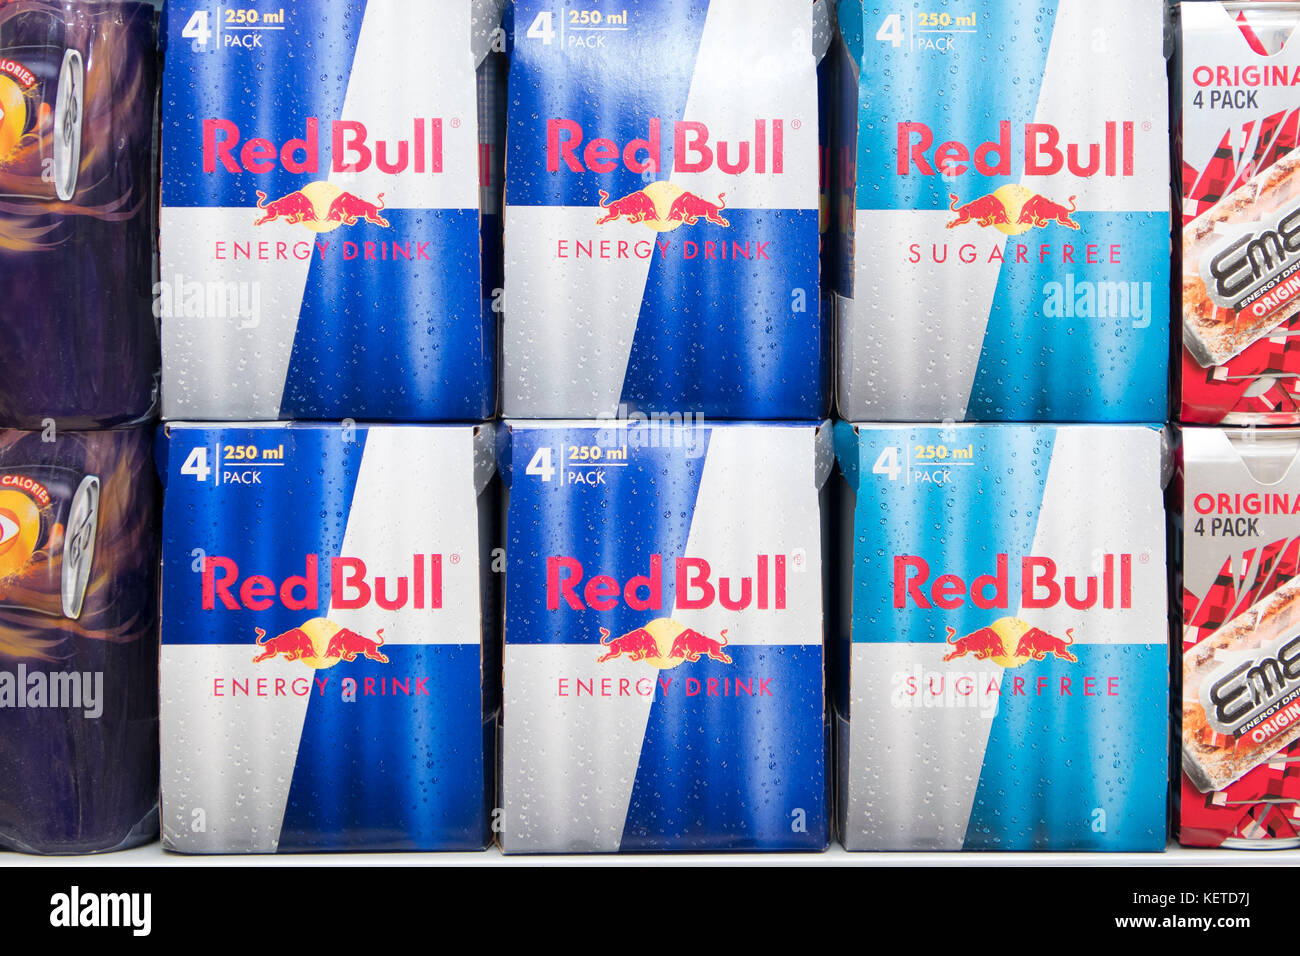 Le lattine di energy drink Red Bull sul display un supermercato scaffale del negozio. Foto Stock